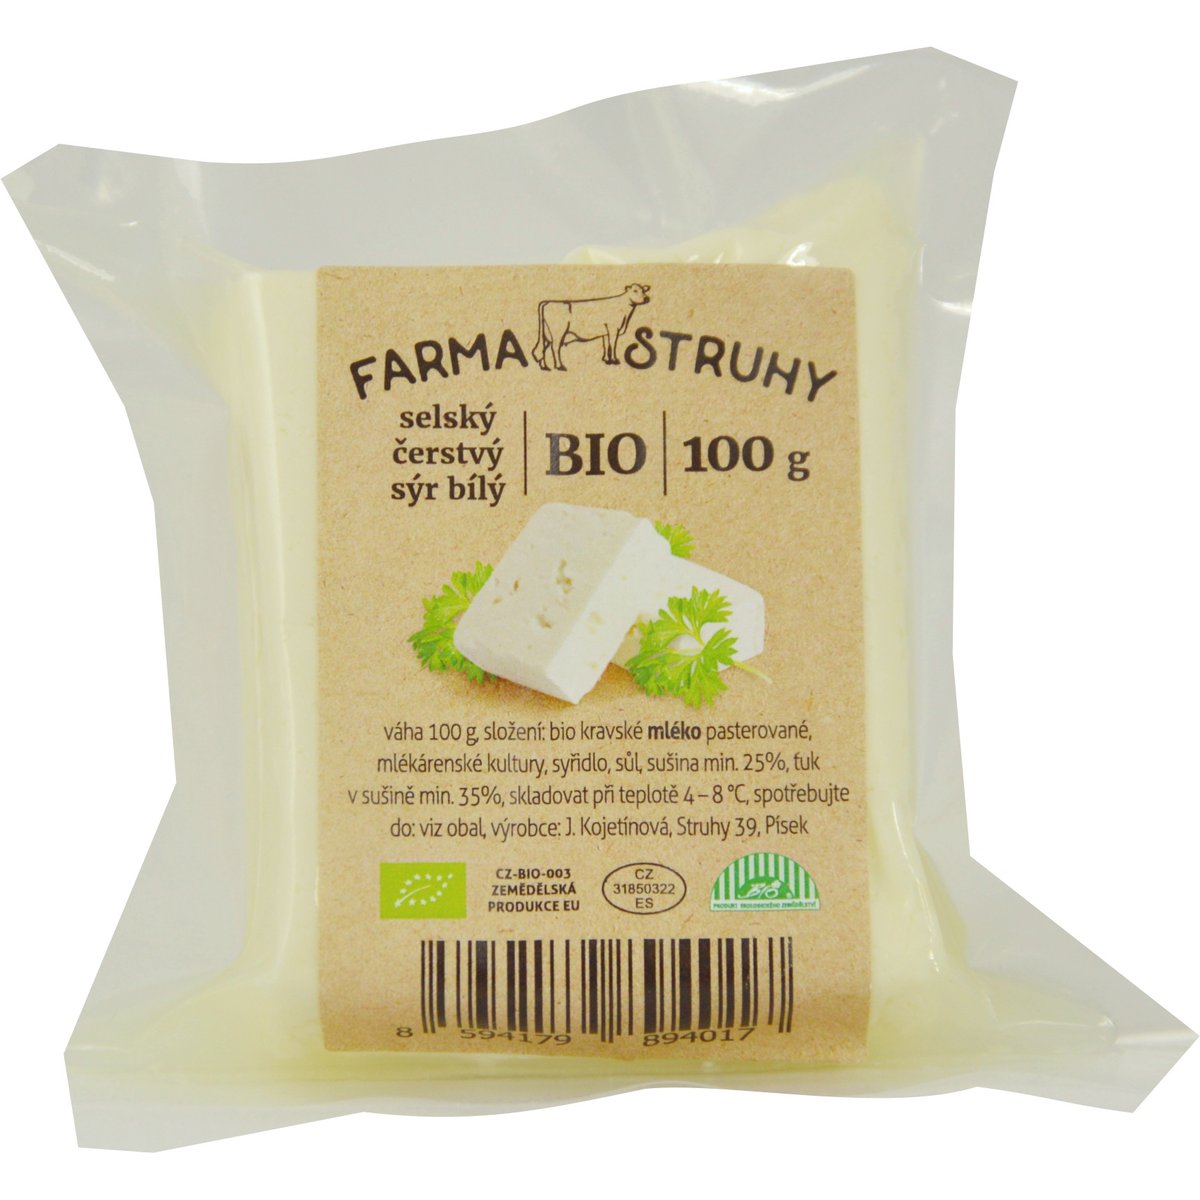 Farma Struhy BIO Selský čerstvý sýr bílý